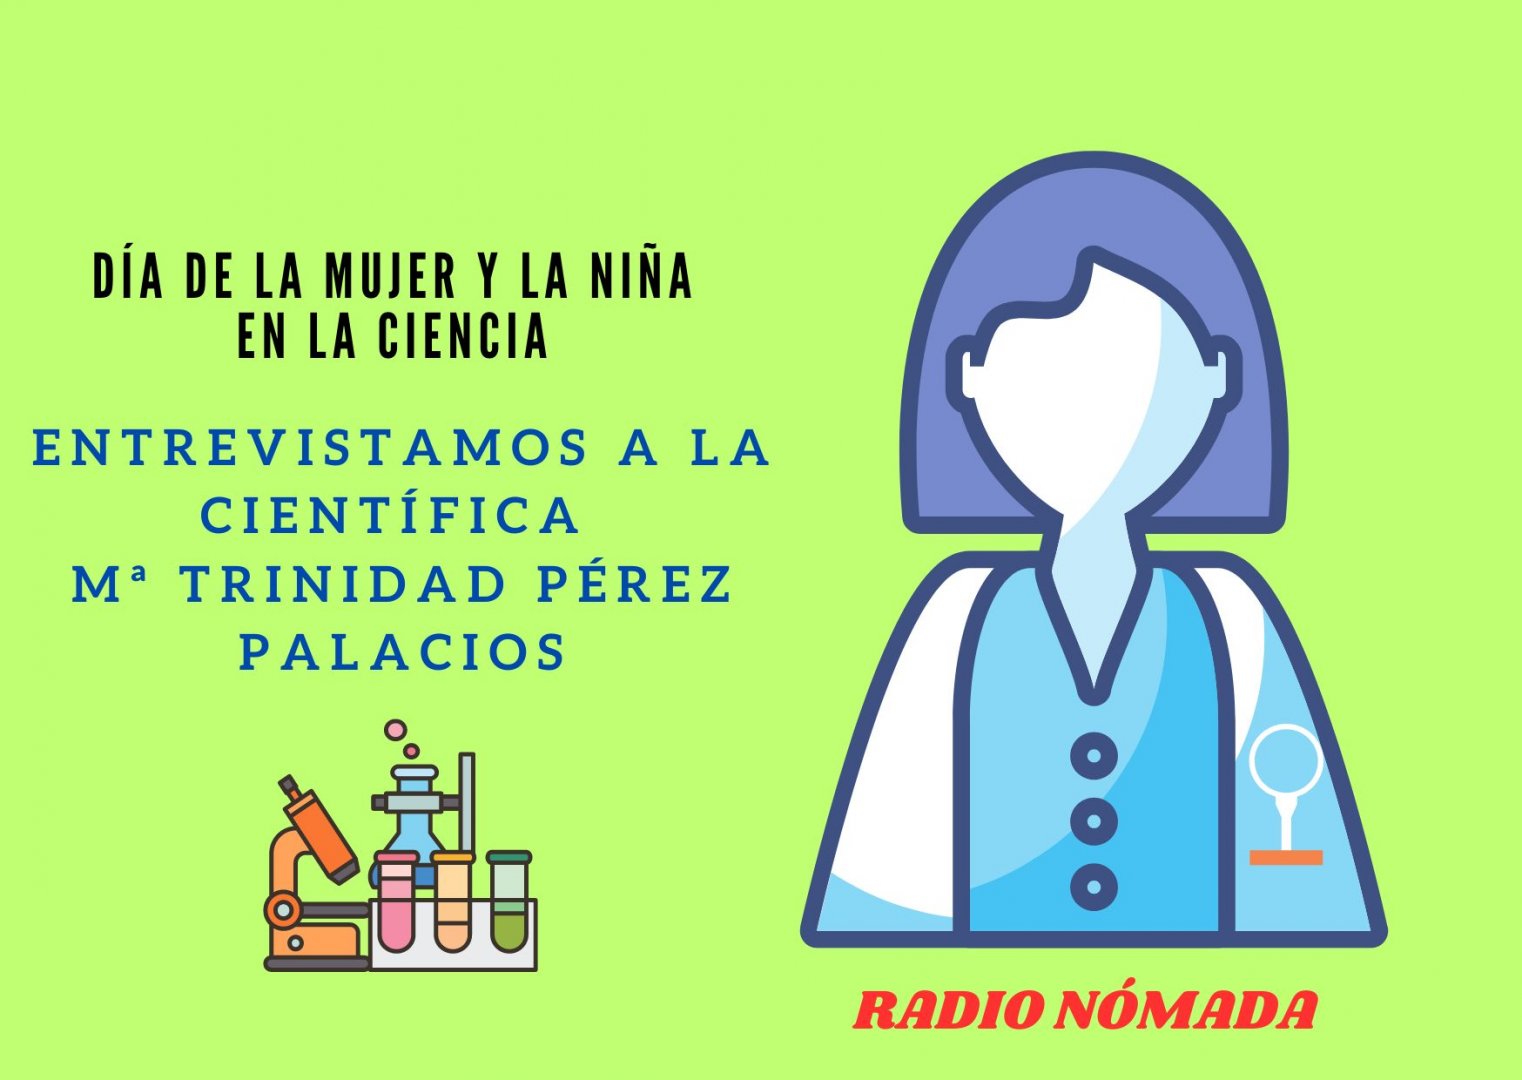 Día de la mujer y la niña en la Ciencia: Entrevistamos a la científica Mª Trinidad Pérez Palacios